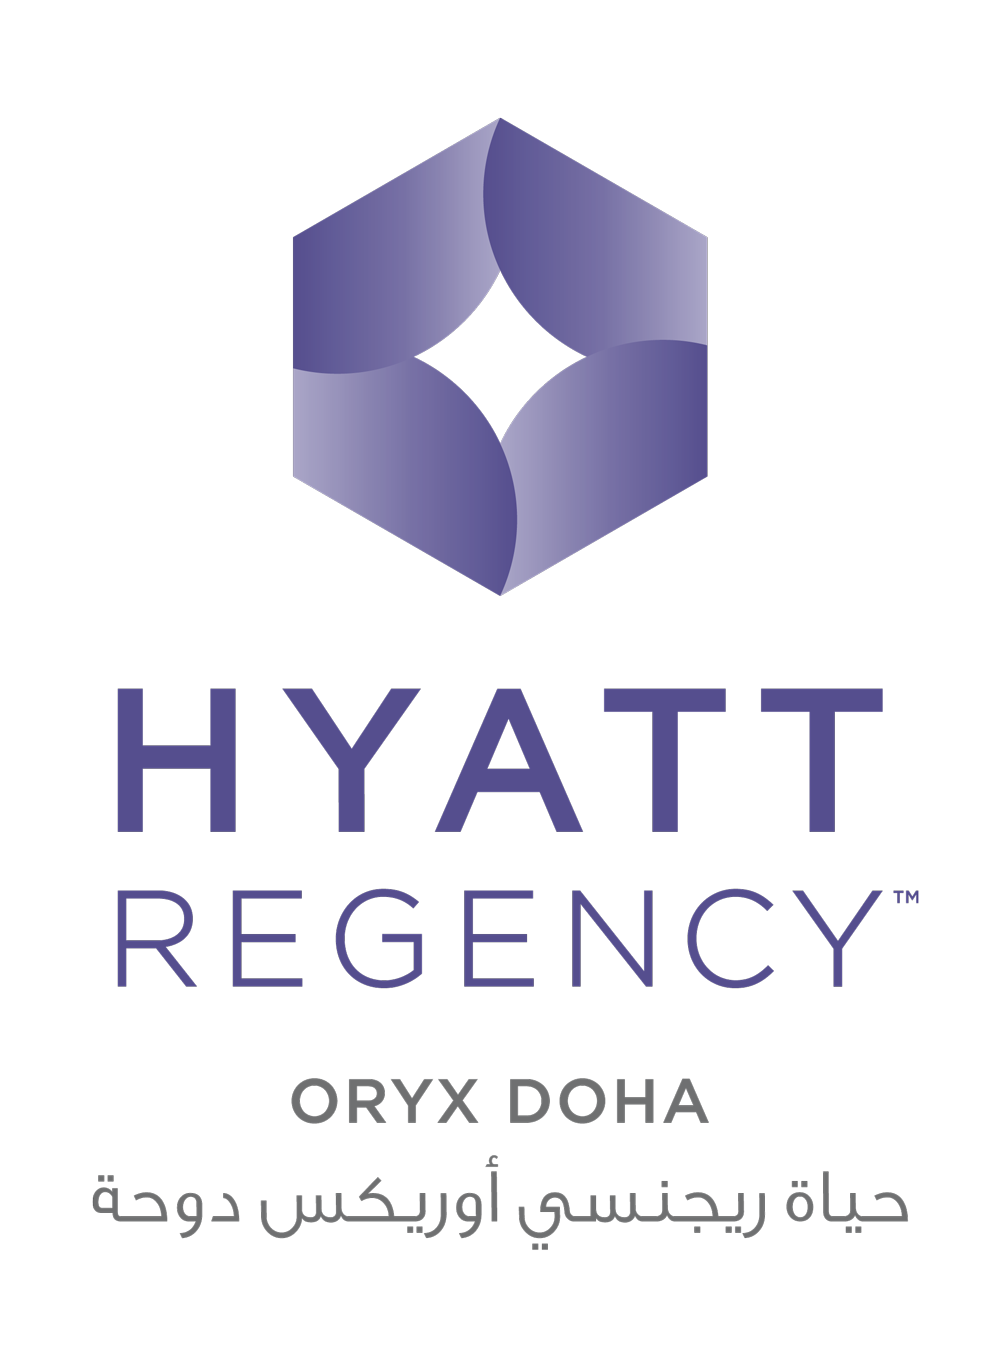 HYATT Regency Oryx Doha